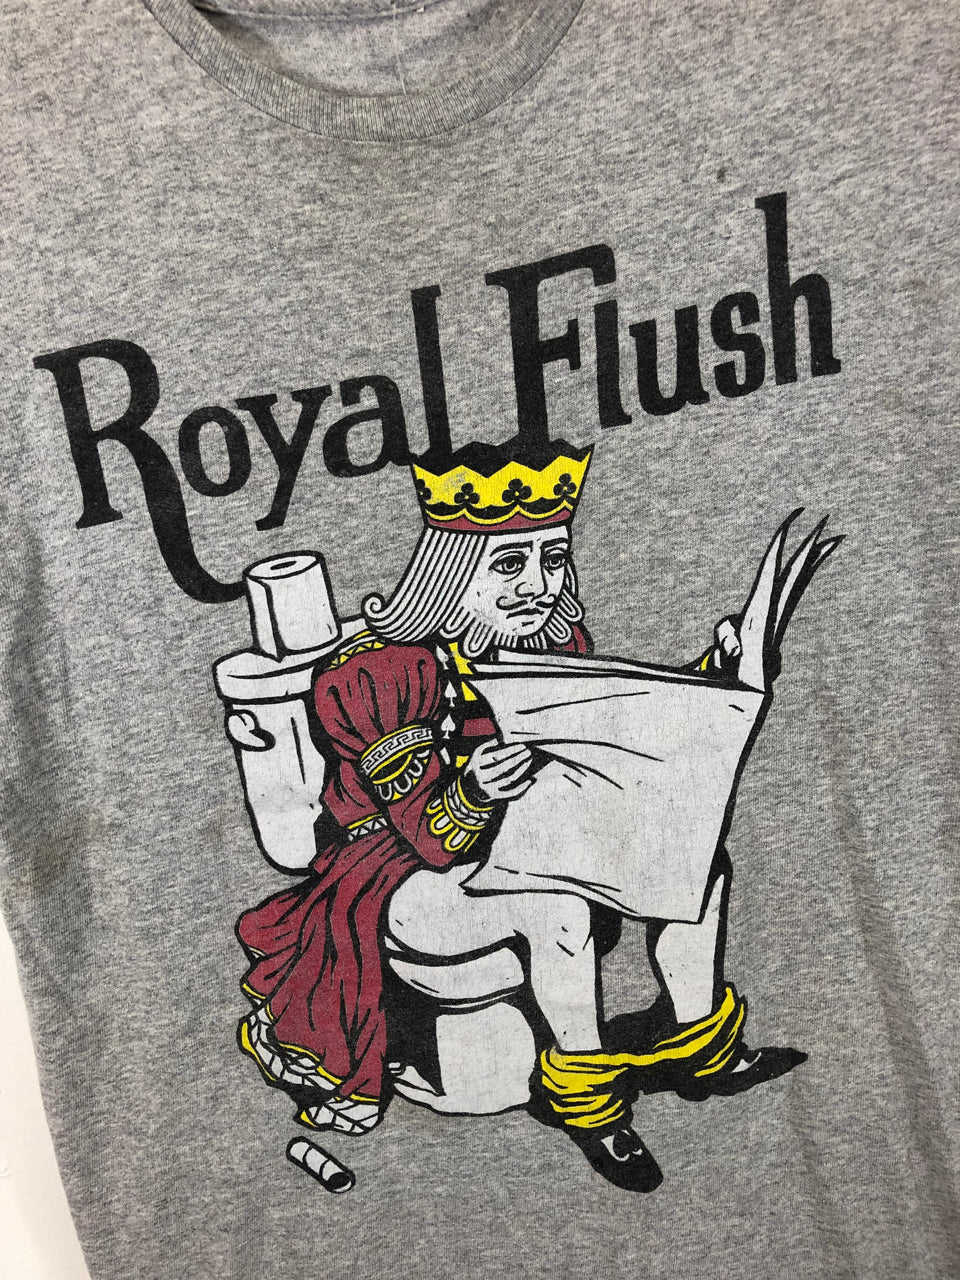 Royal Flush T-Shirt